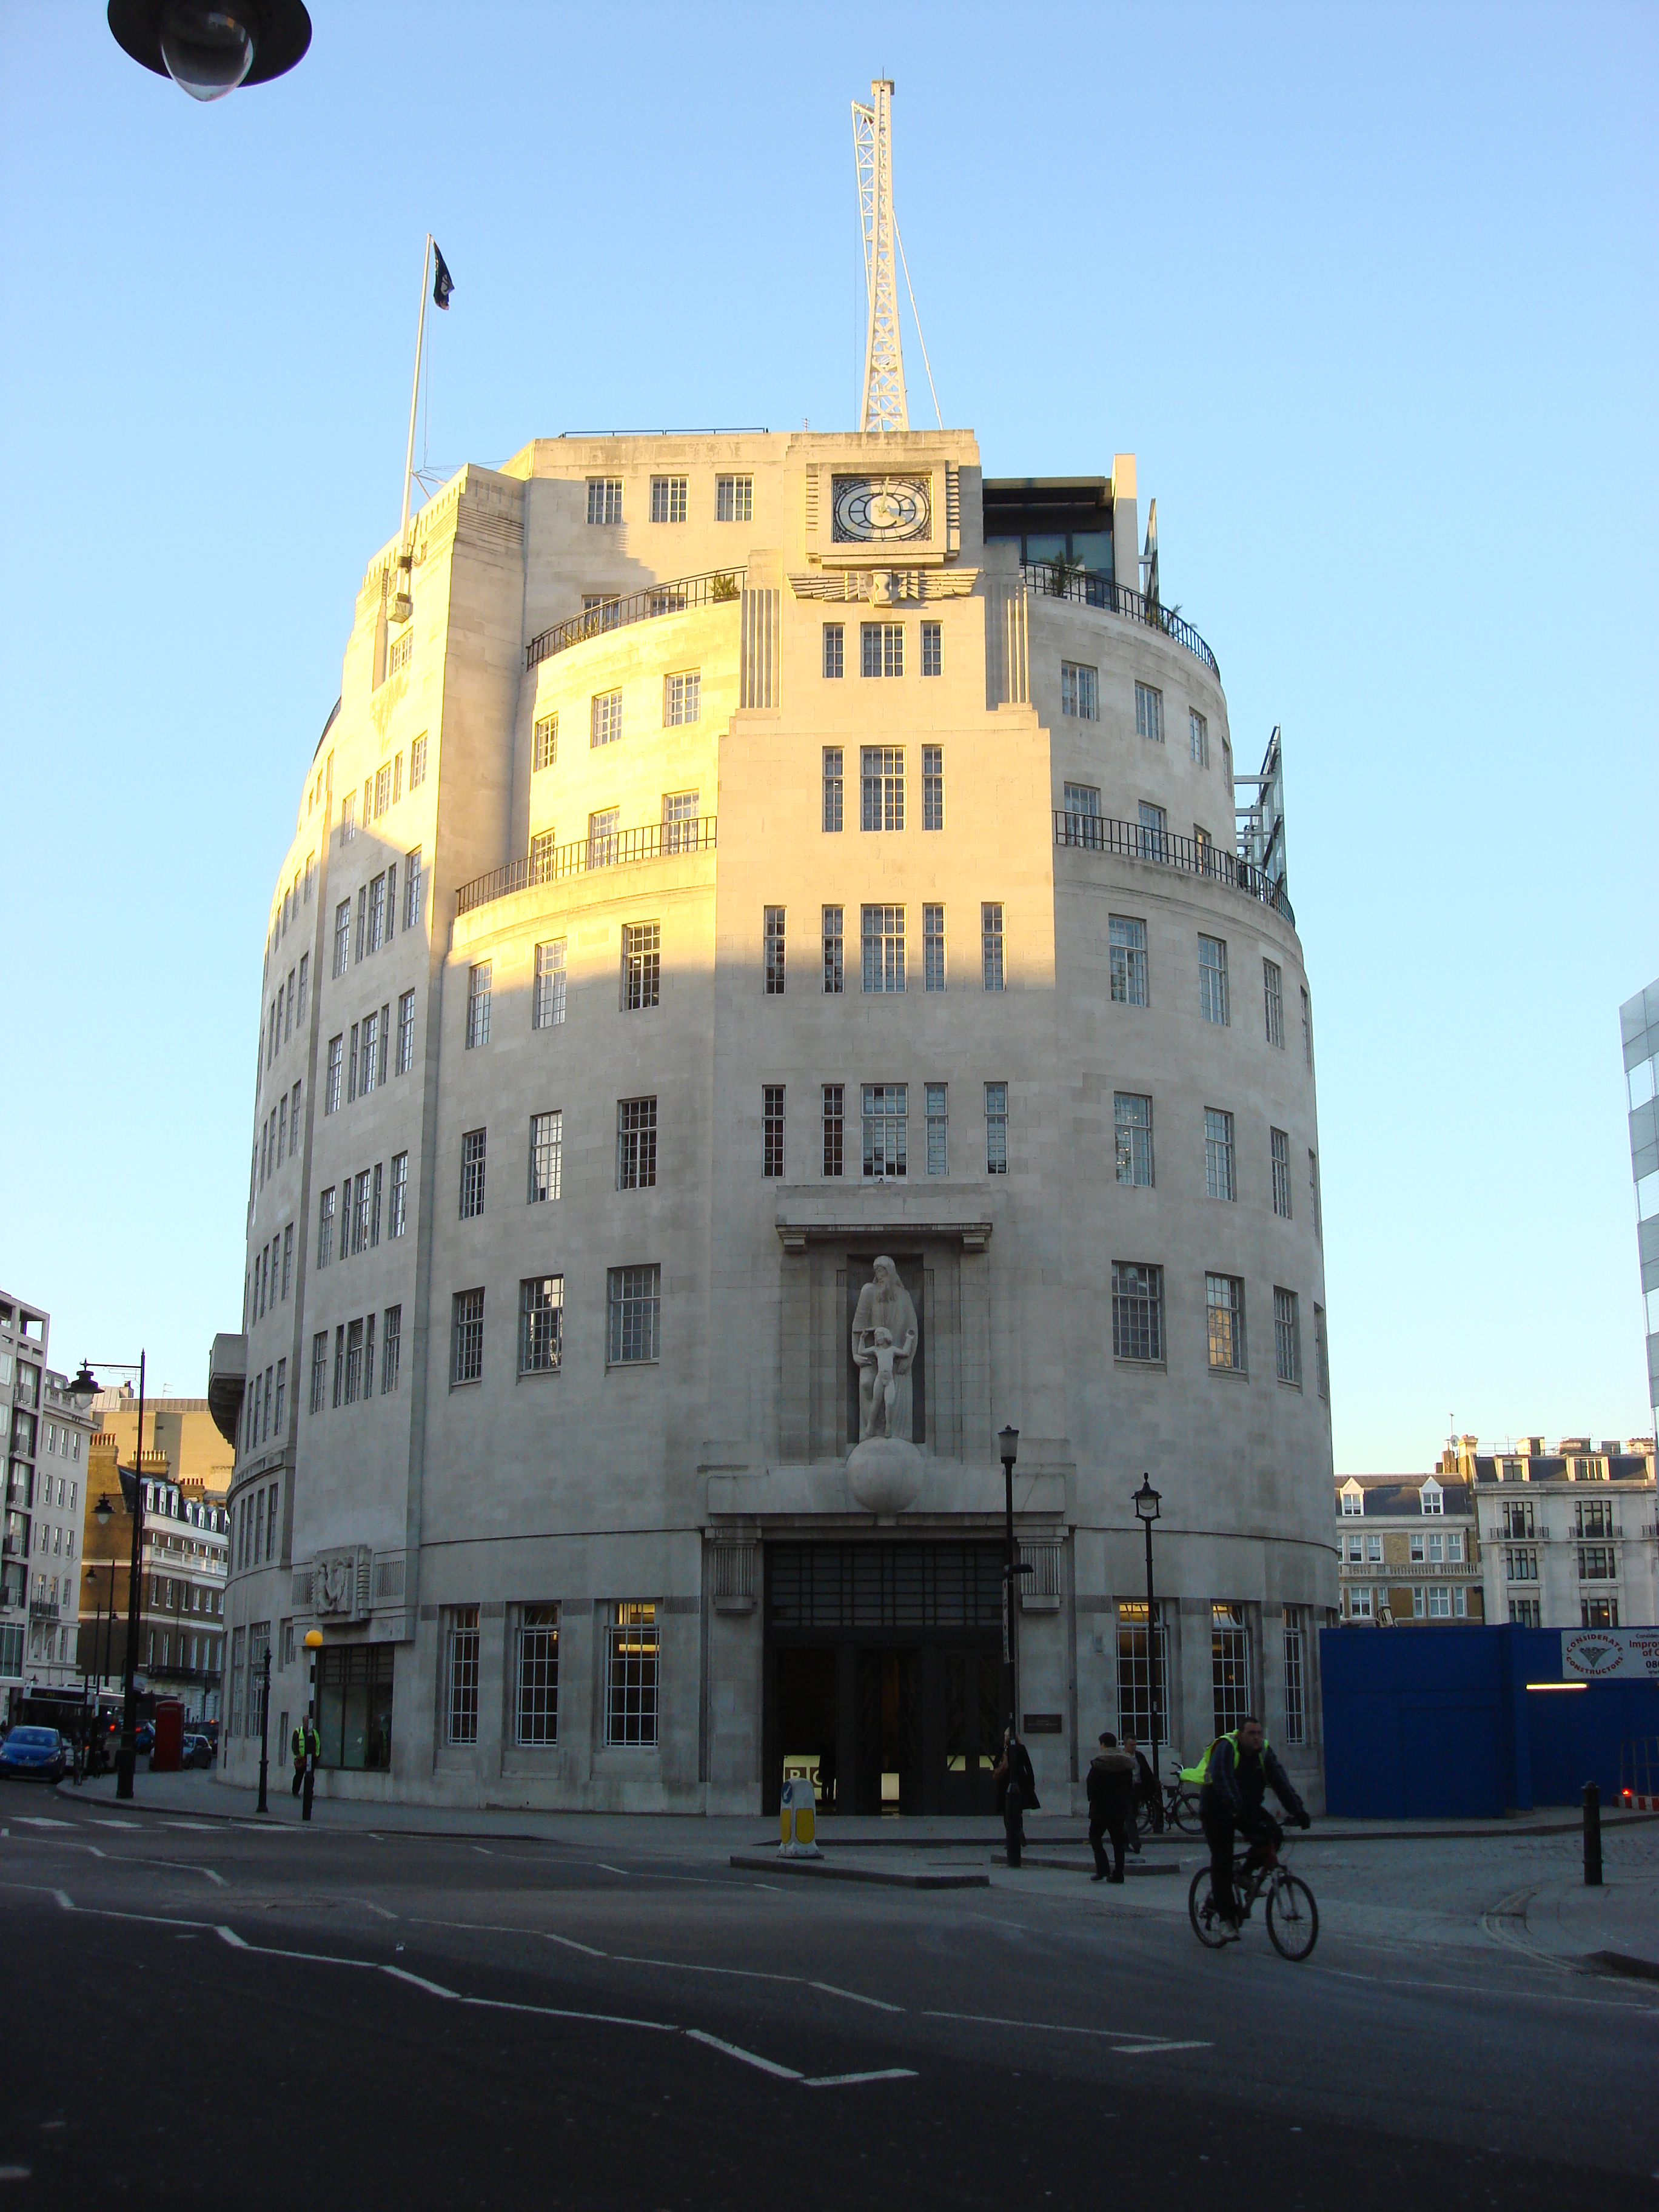 Het Broadcasting House is het hoofdkwartier van de BBC in Londen